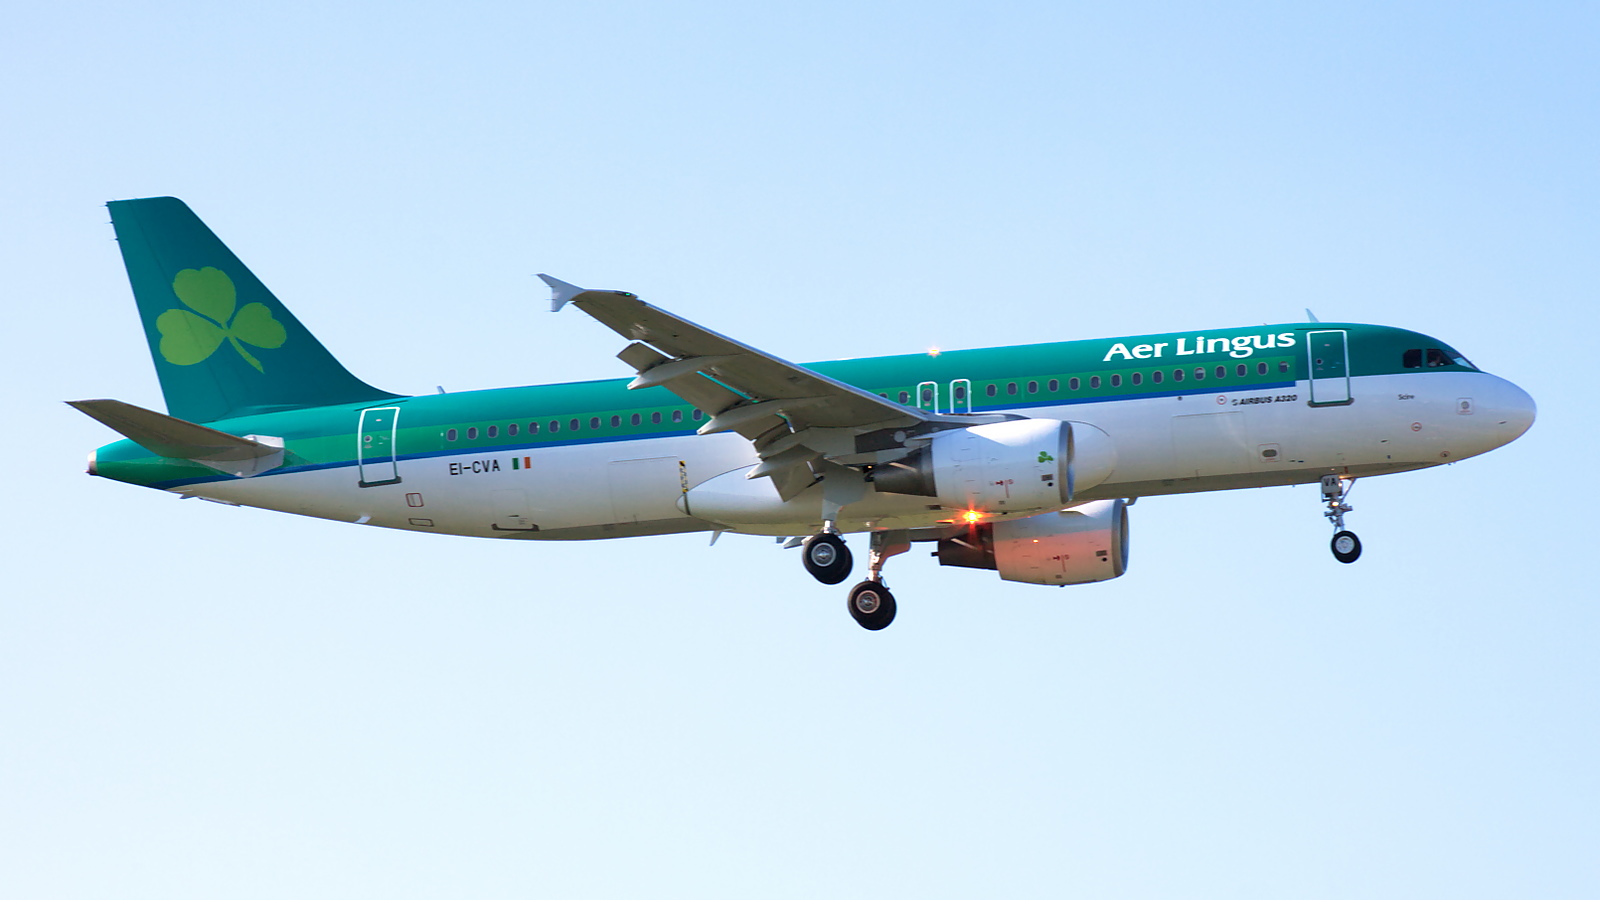 EI-CVA ✈ Aer Lingus Airbus A320-214 @ London-Heathrow